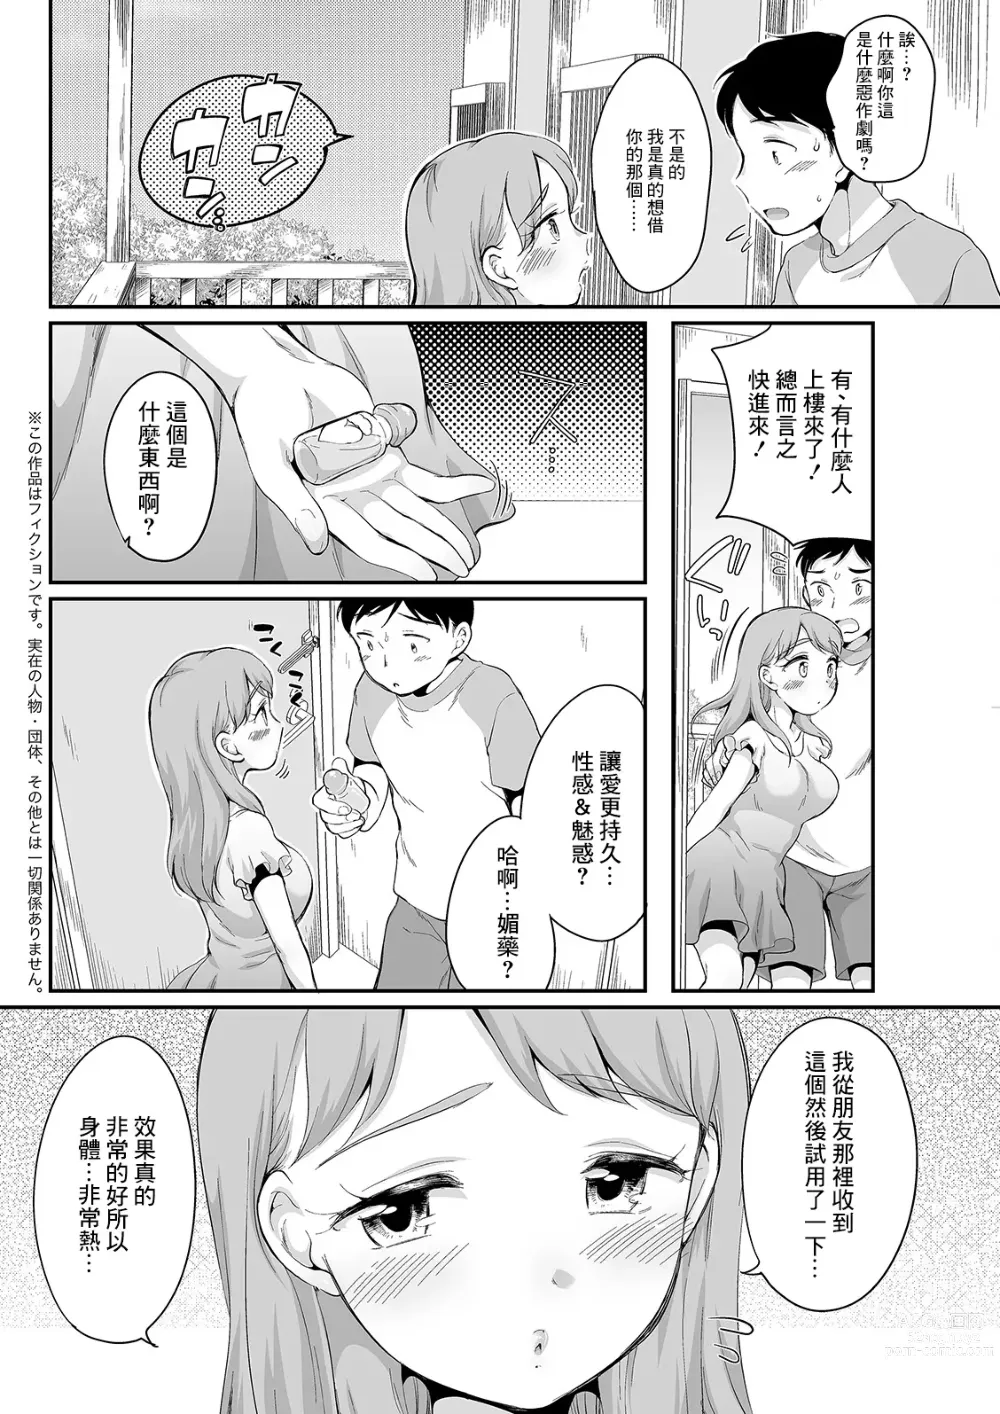 Page 2 of manga Kashite Hoshi no